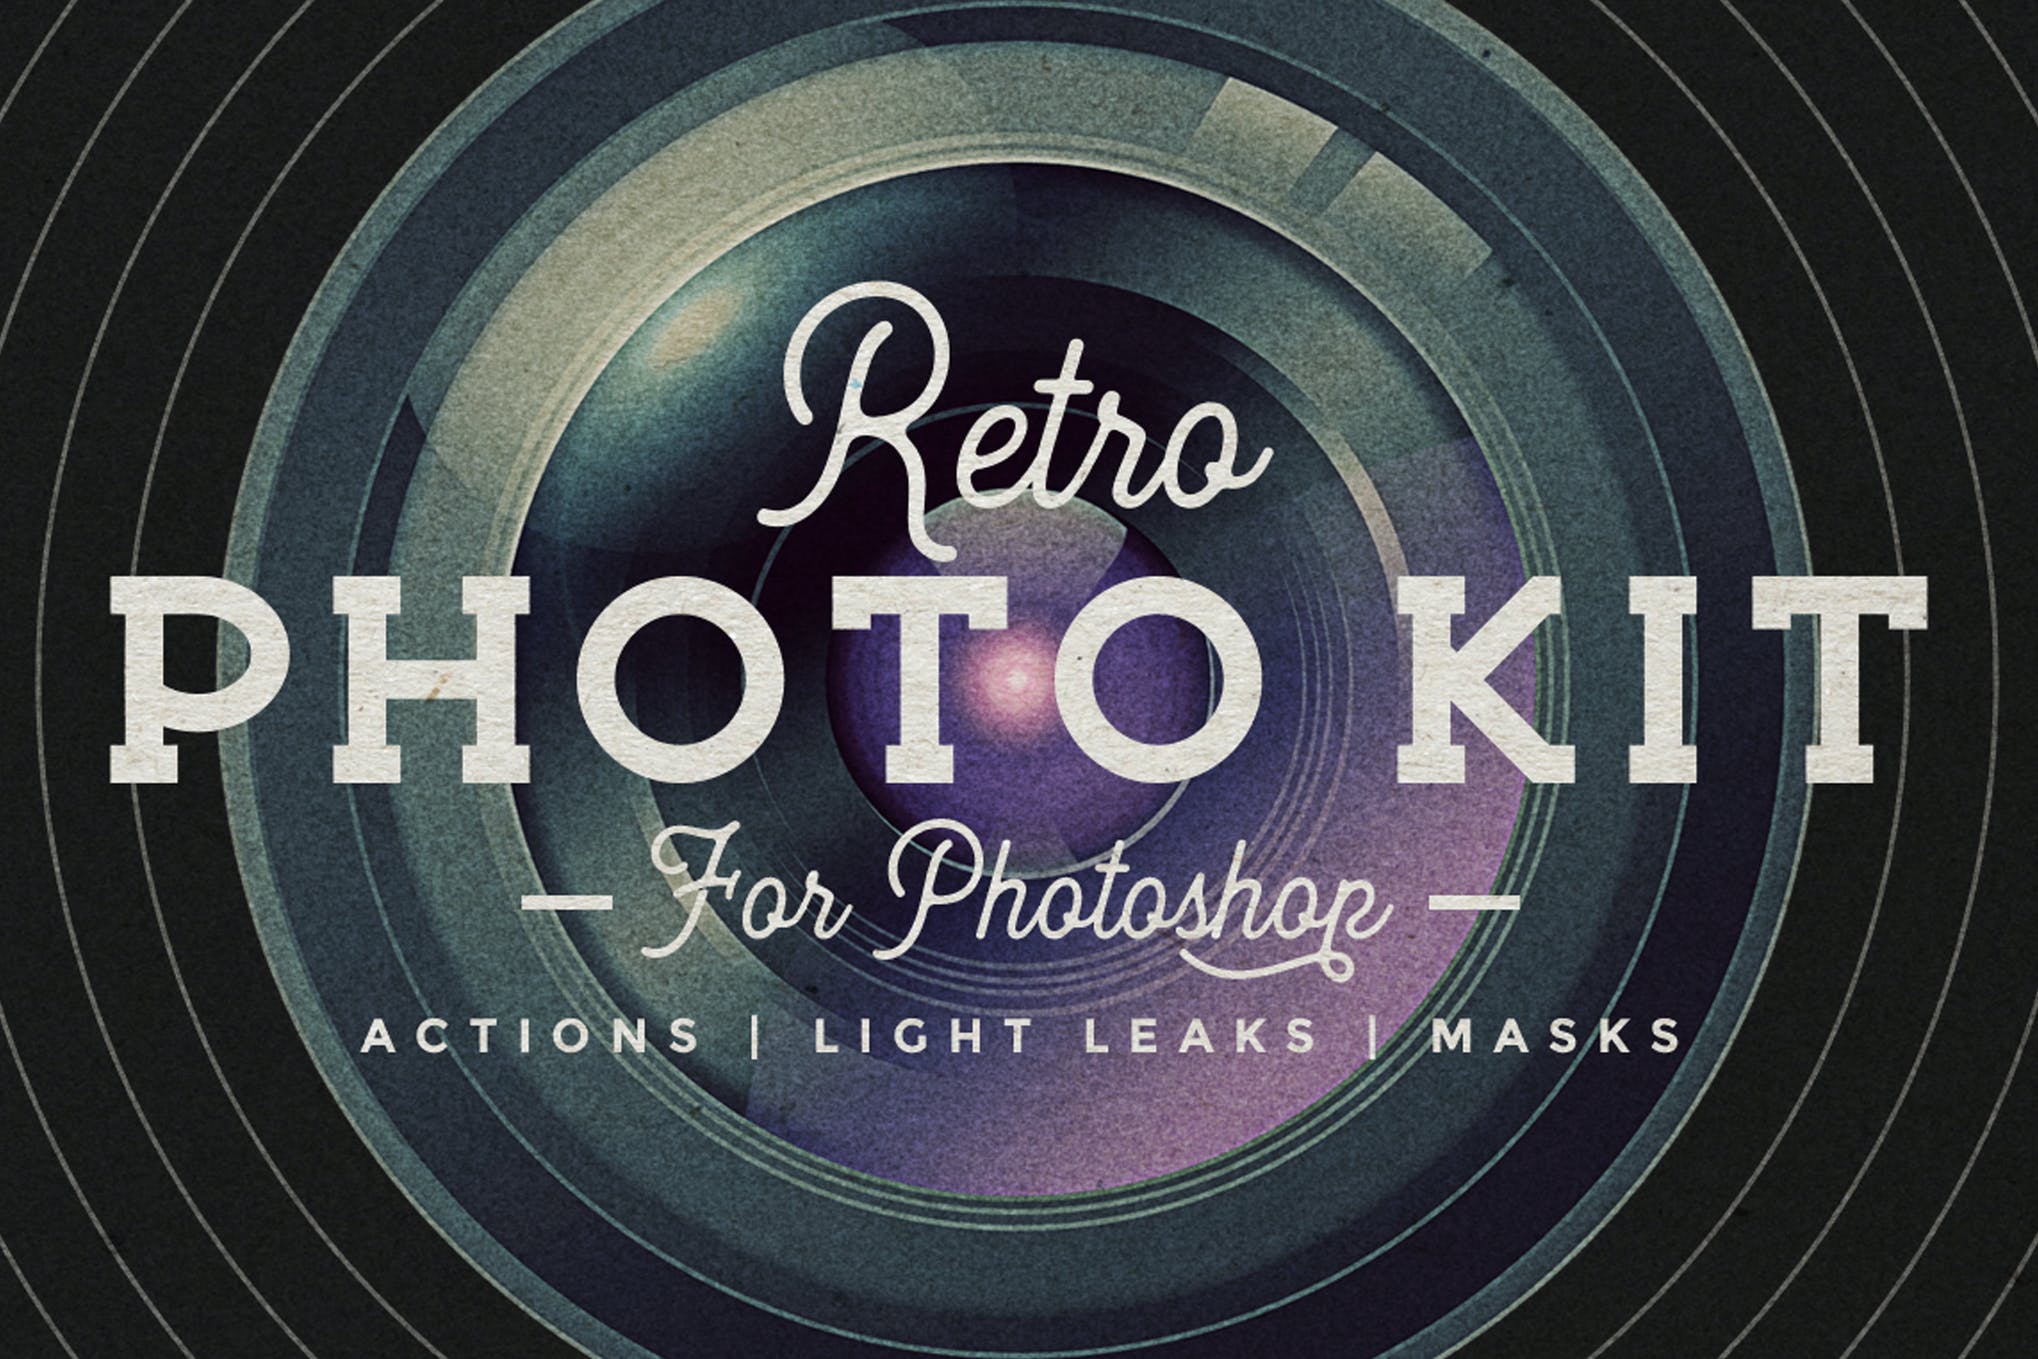 50 Retro Film Photoshop Actions